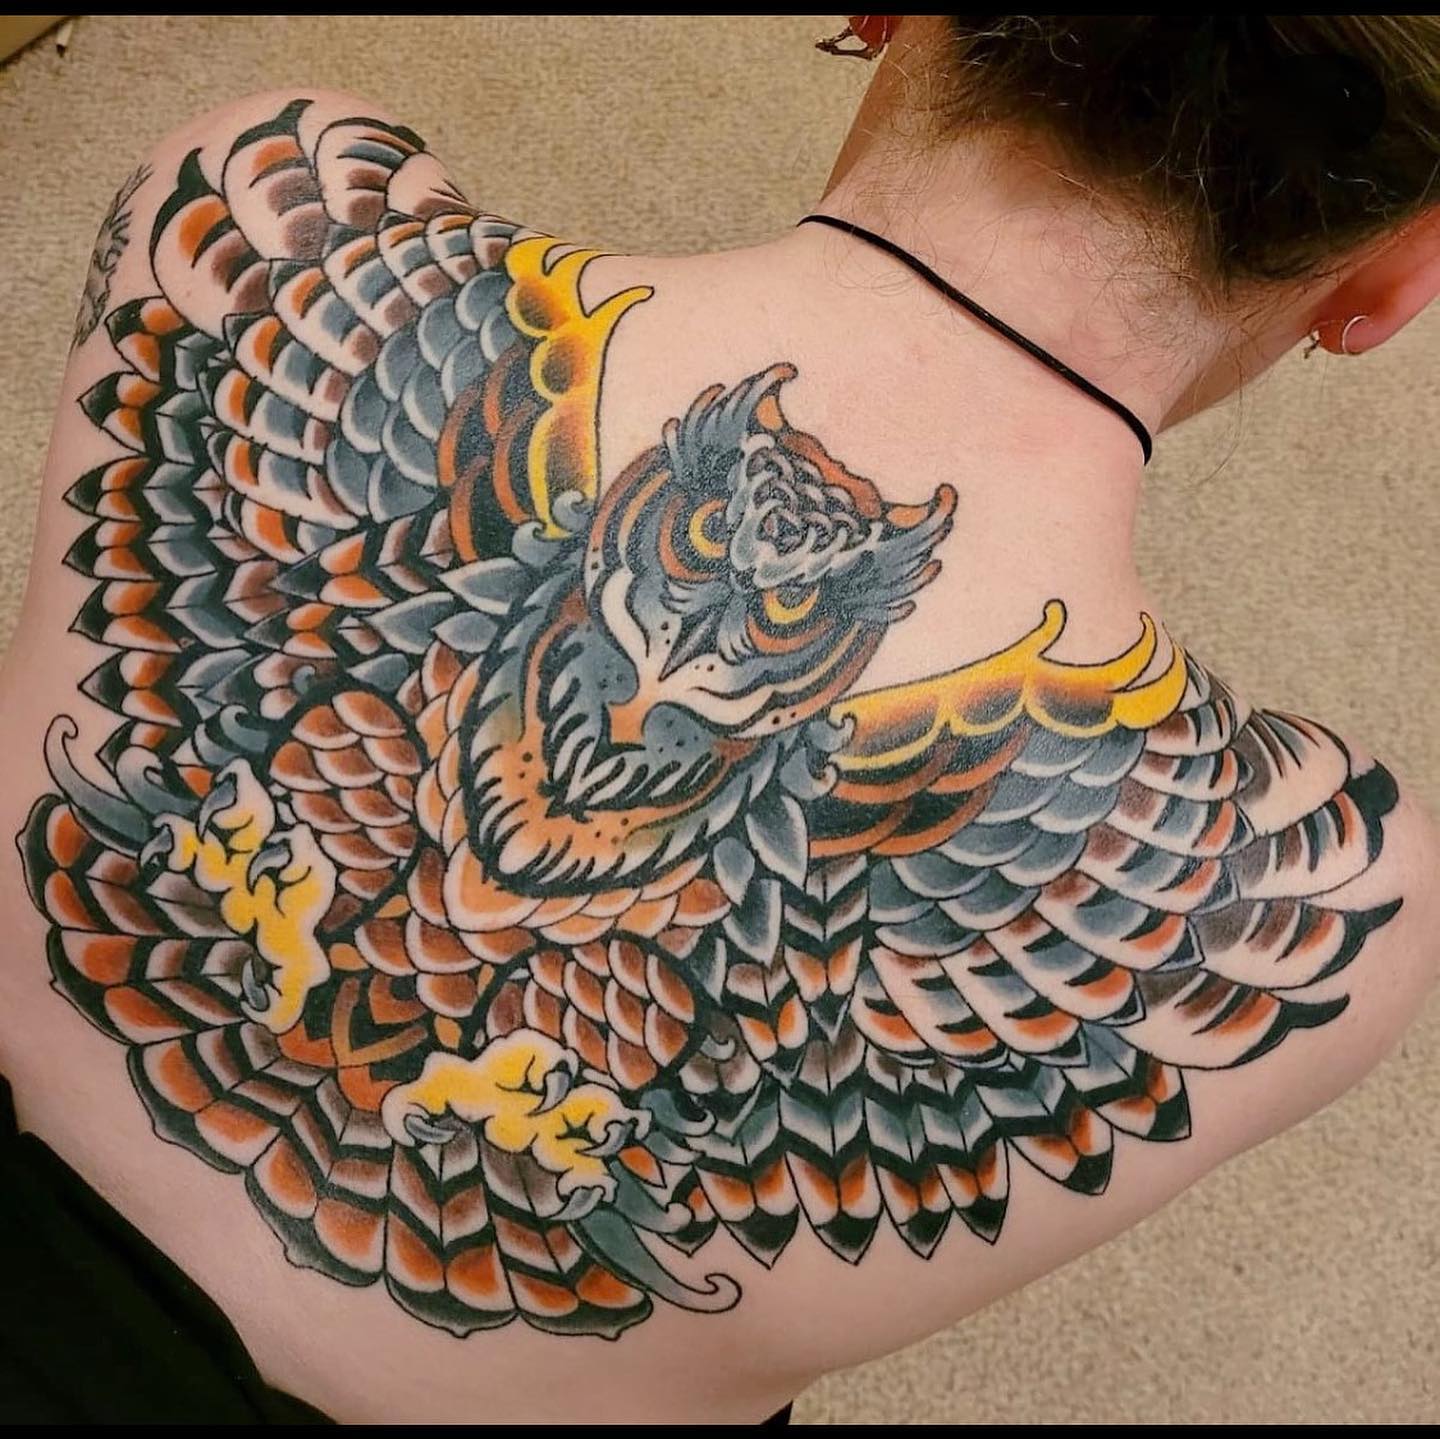 Gran tatuaje de búho en la espalda.